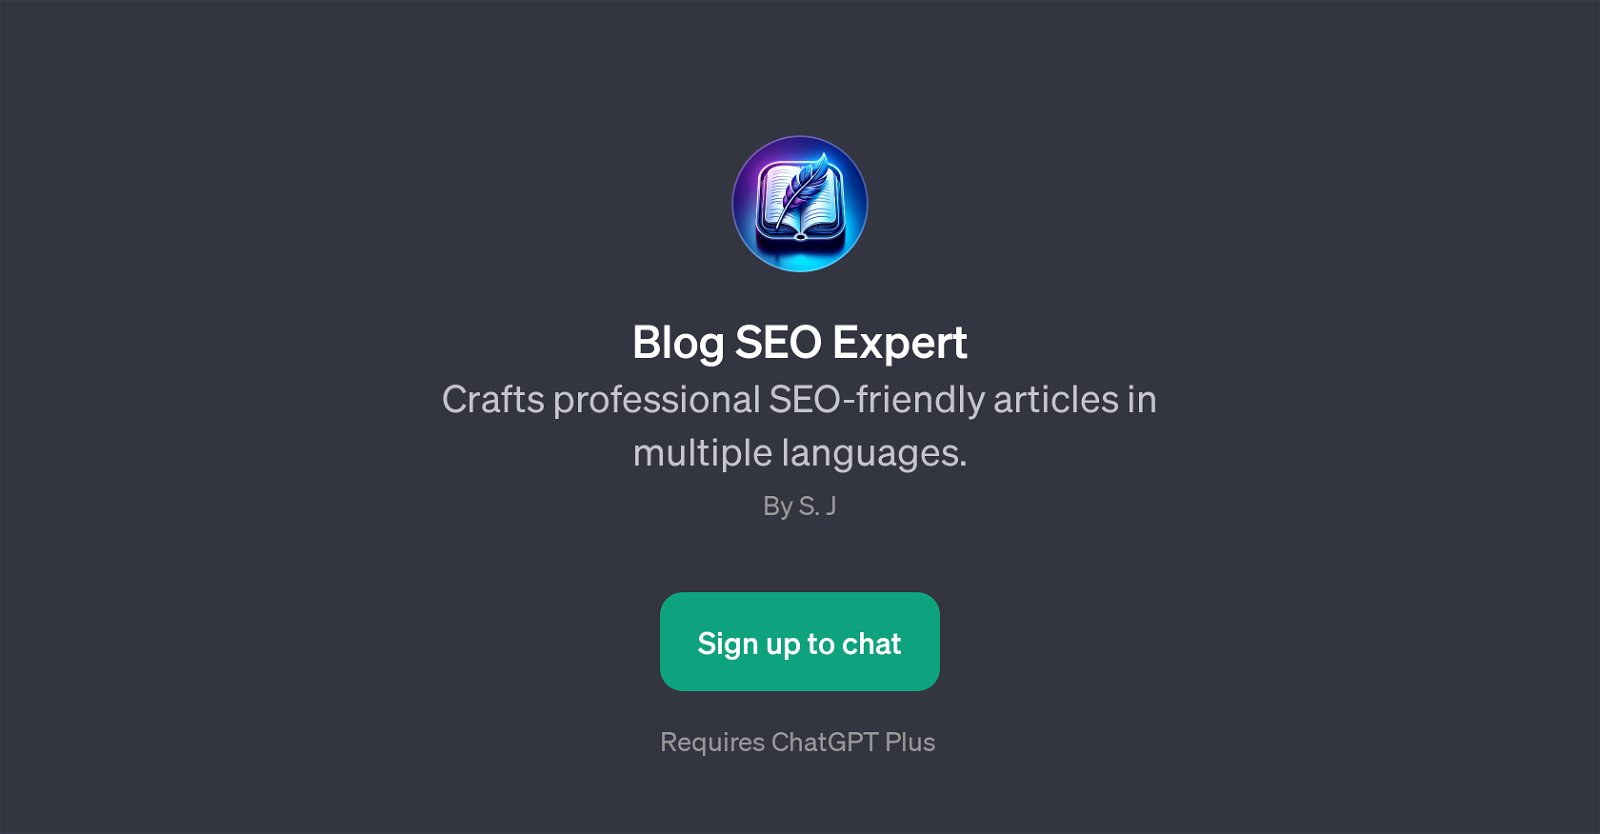 Blog SEO Expert website